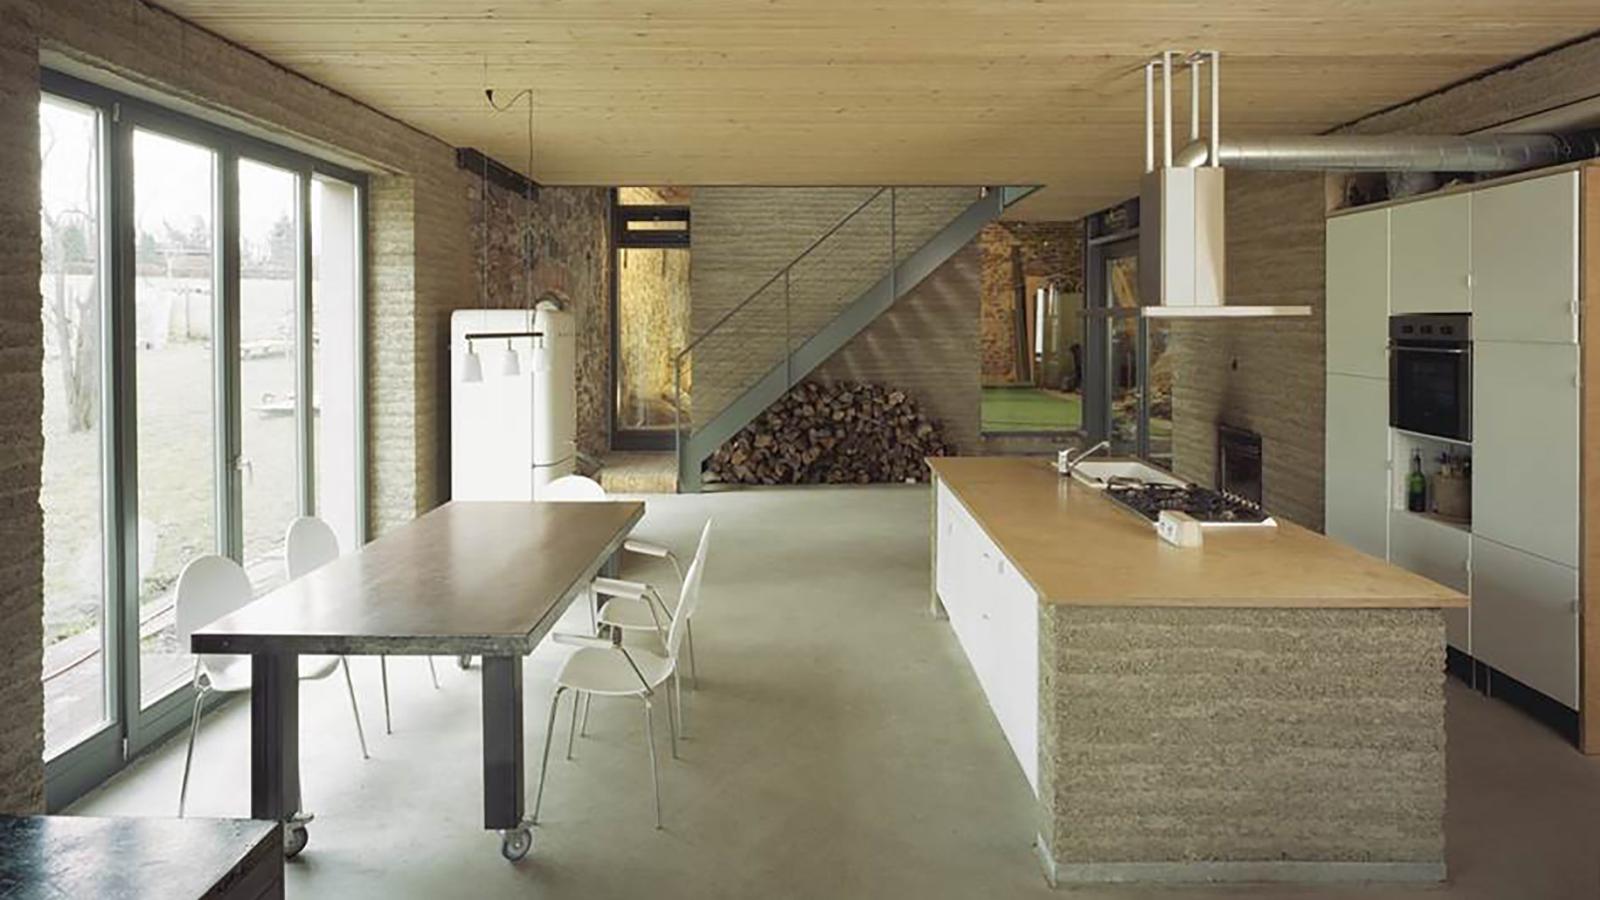 Stampflehmhaus: Modern eingerichtetes Zimmer mit Küche, Esstisch und Fensterfront